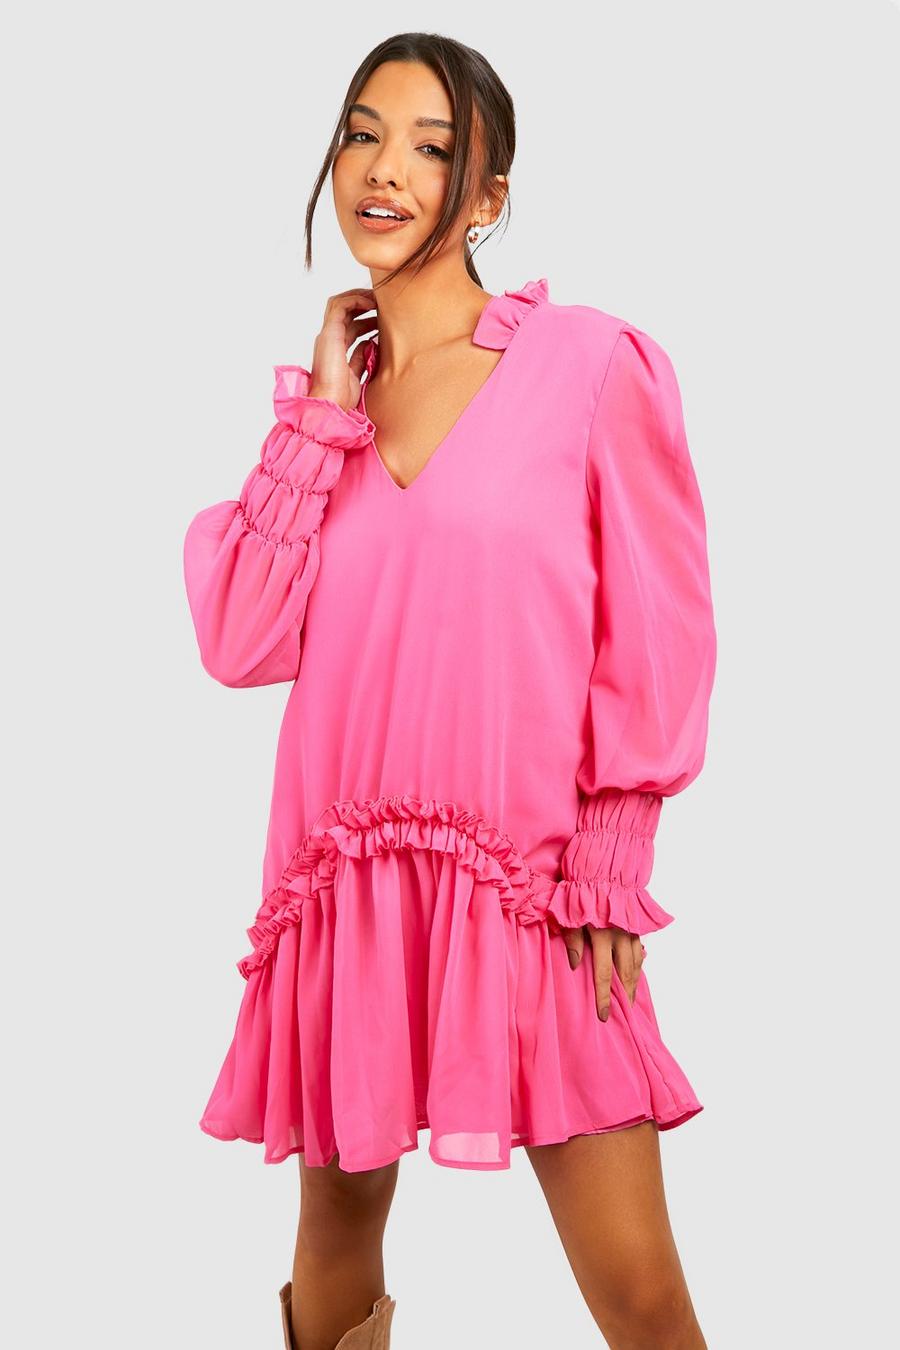 Robe babydoll à volants, Hot pink